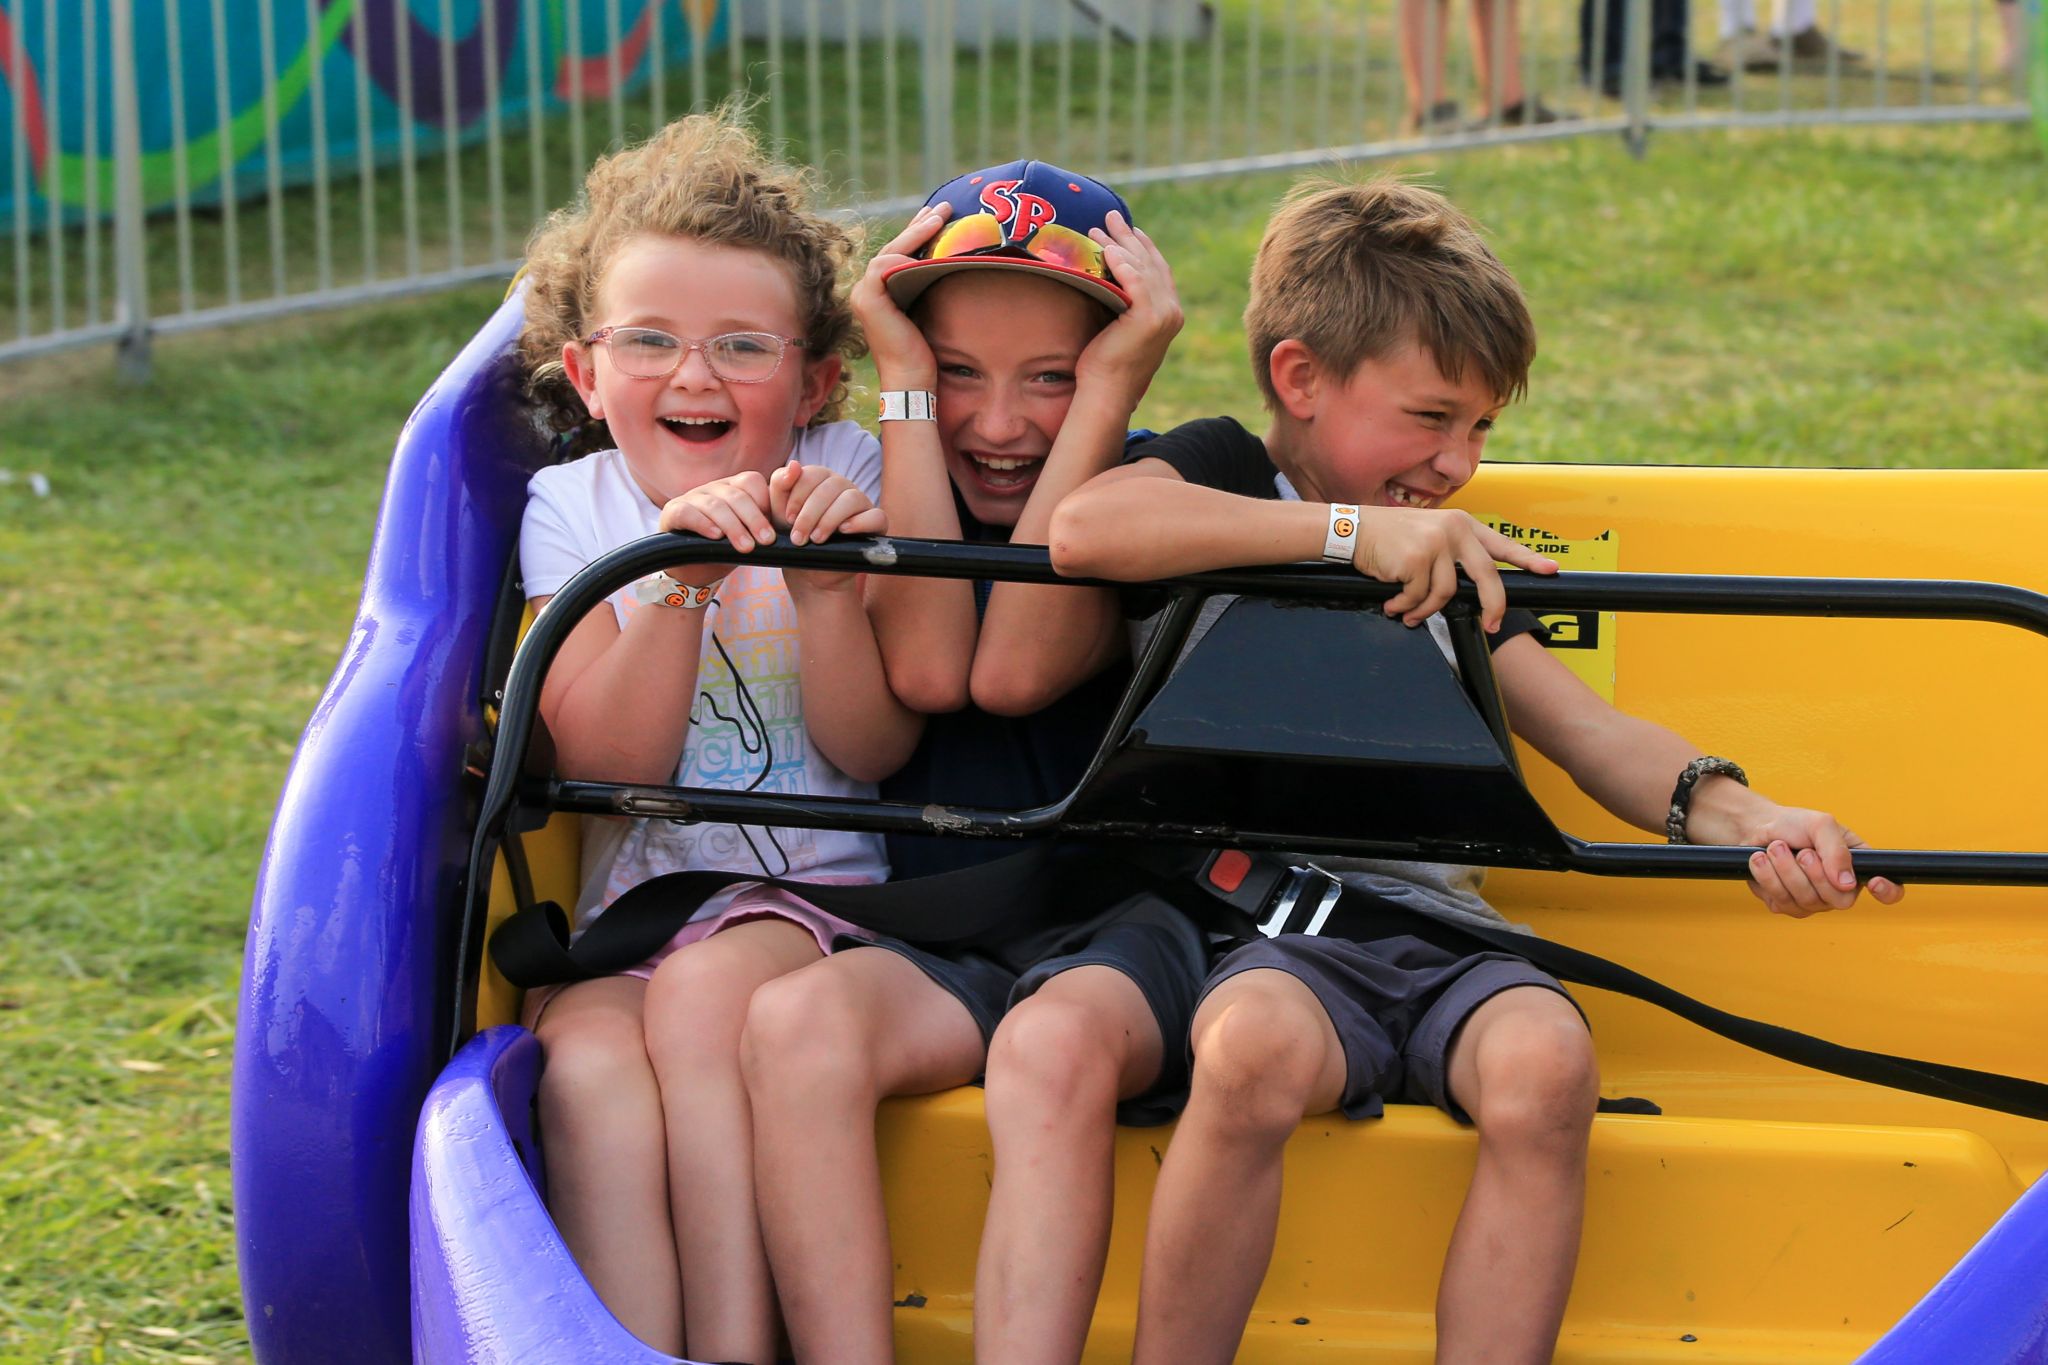 Huron Community Fair returns with summer fun